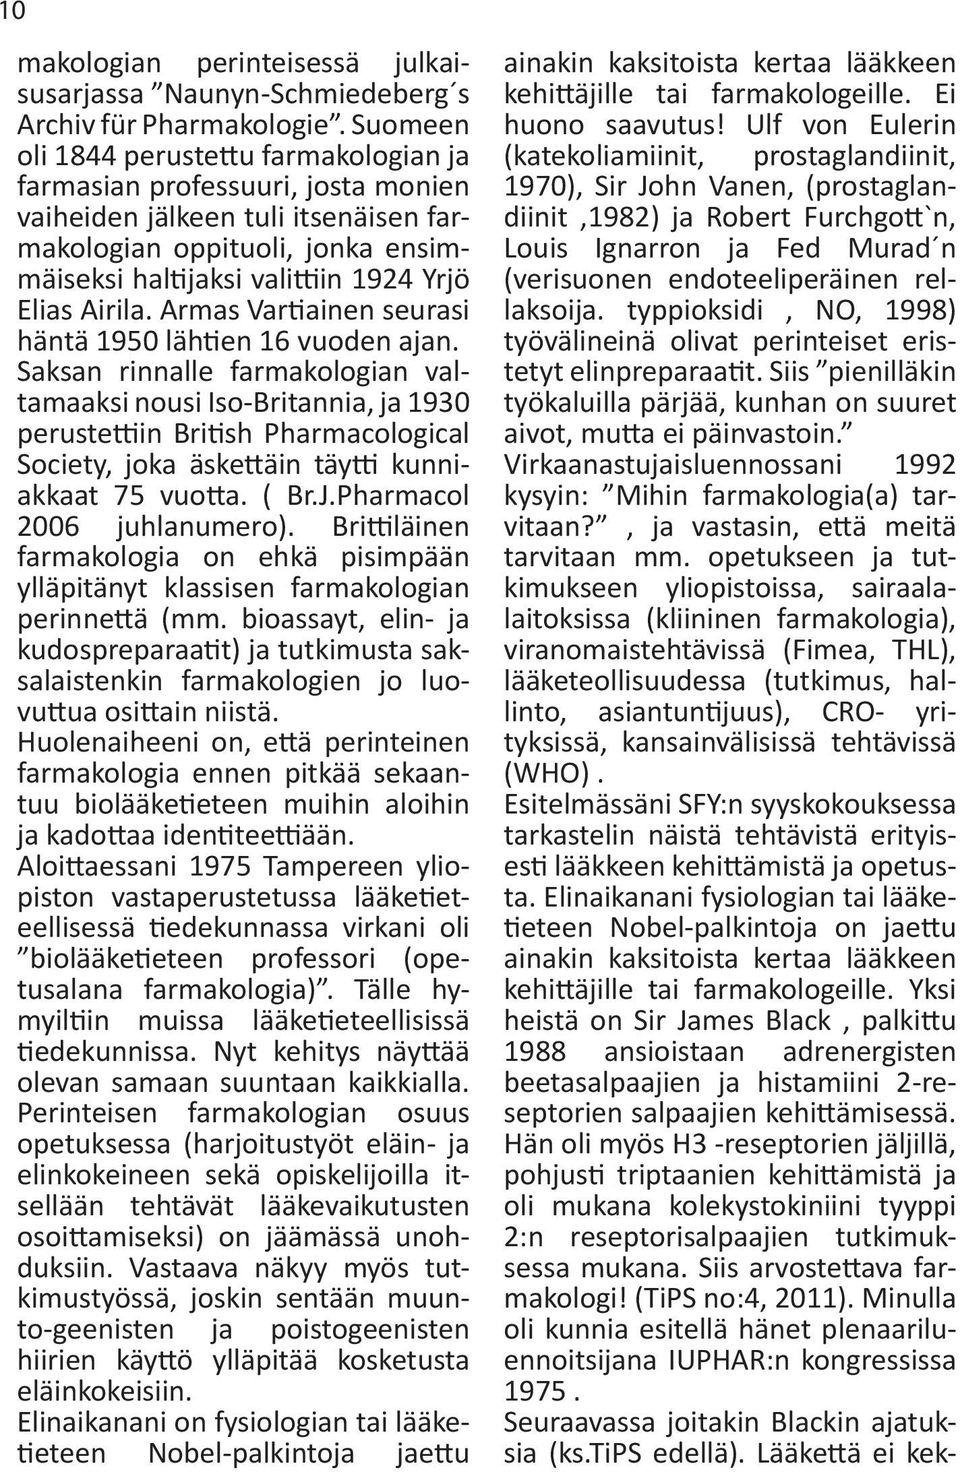 Airila. Armas Vartiainen seurasi häntä 1950 lähtien 16 vuoden ajan.